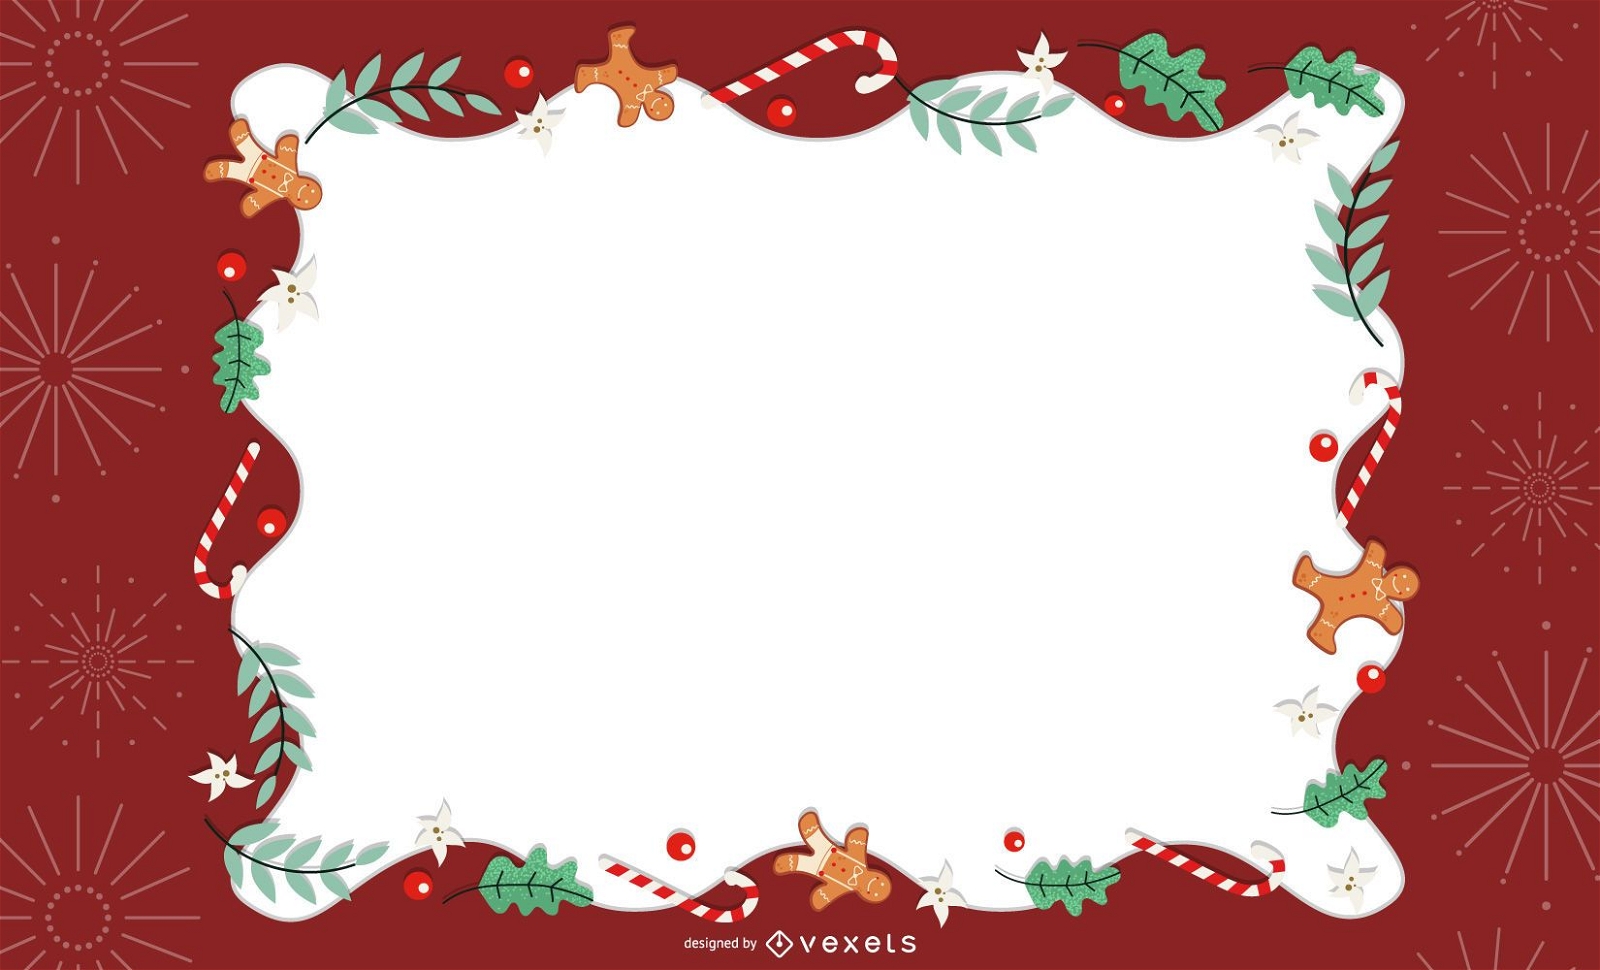 Weihnachtsrahmen-Kartenentwurf